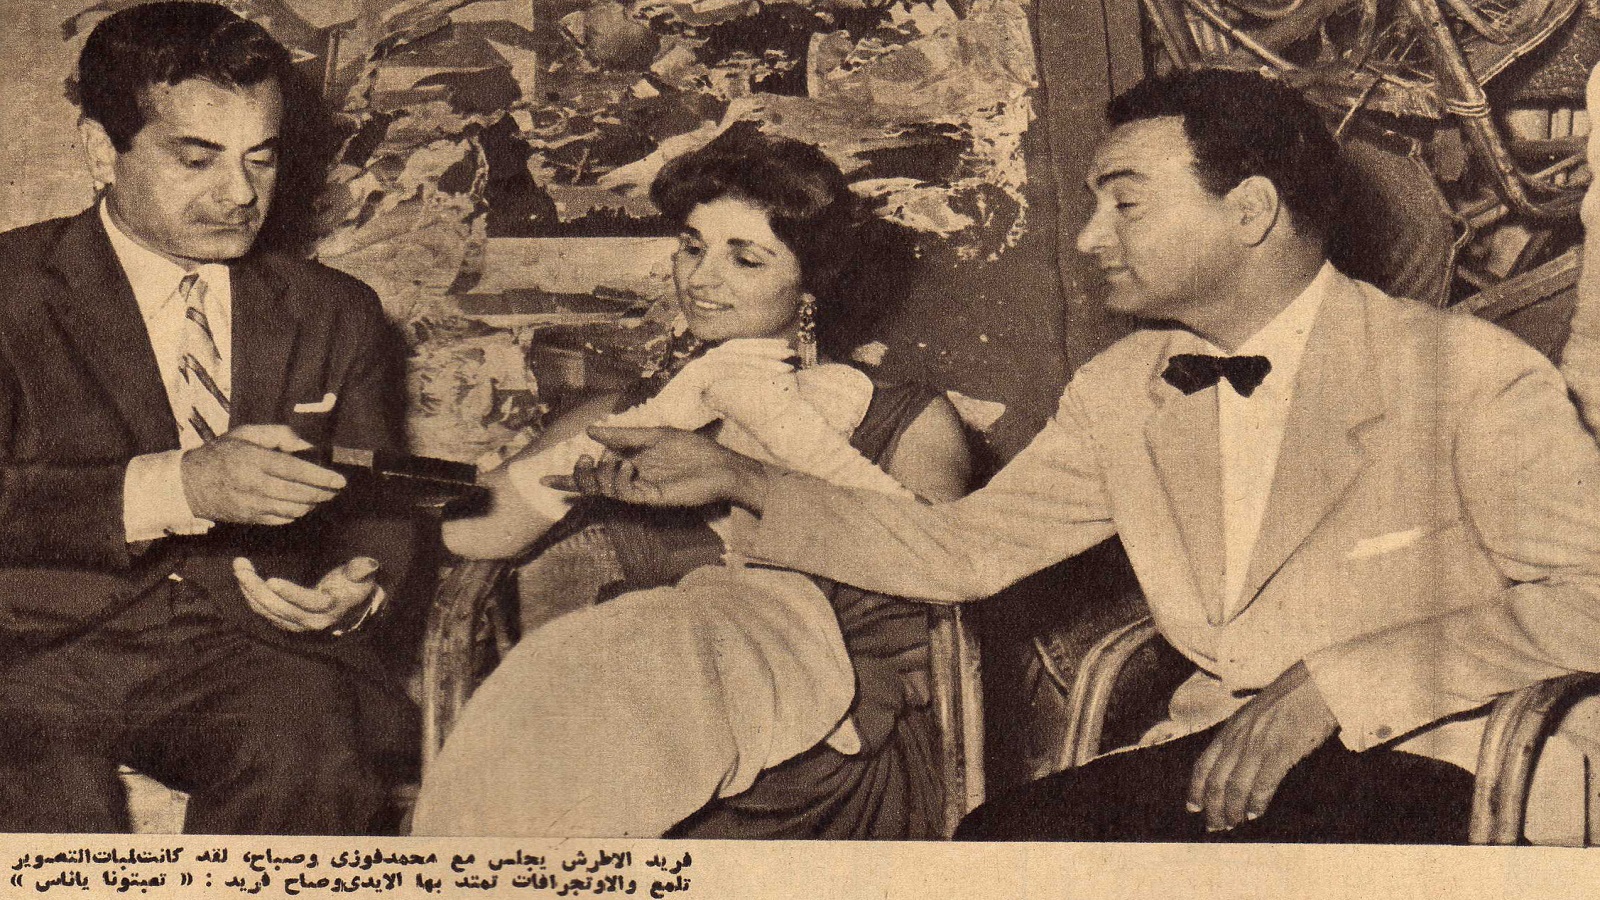 مع صباح وفريد الأطرش، 1959.